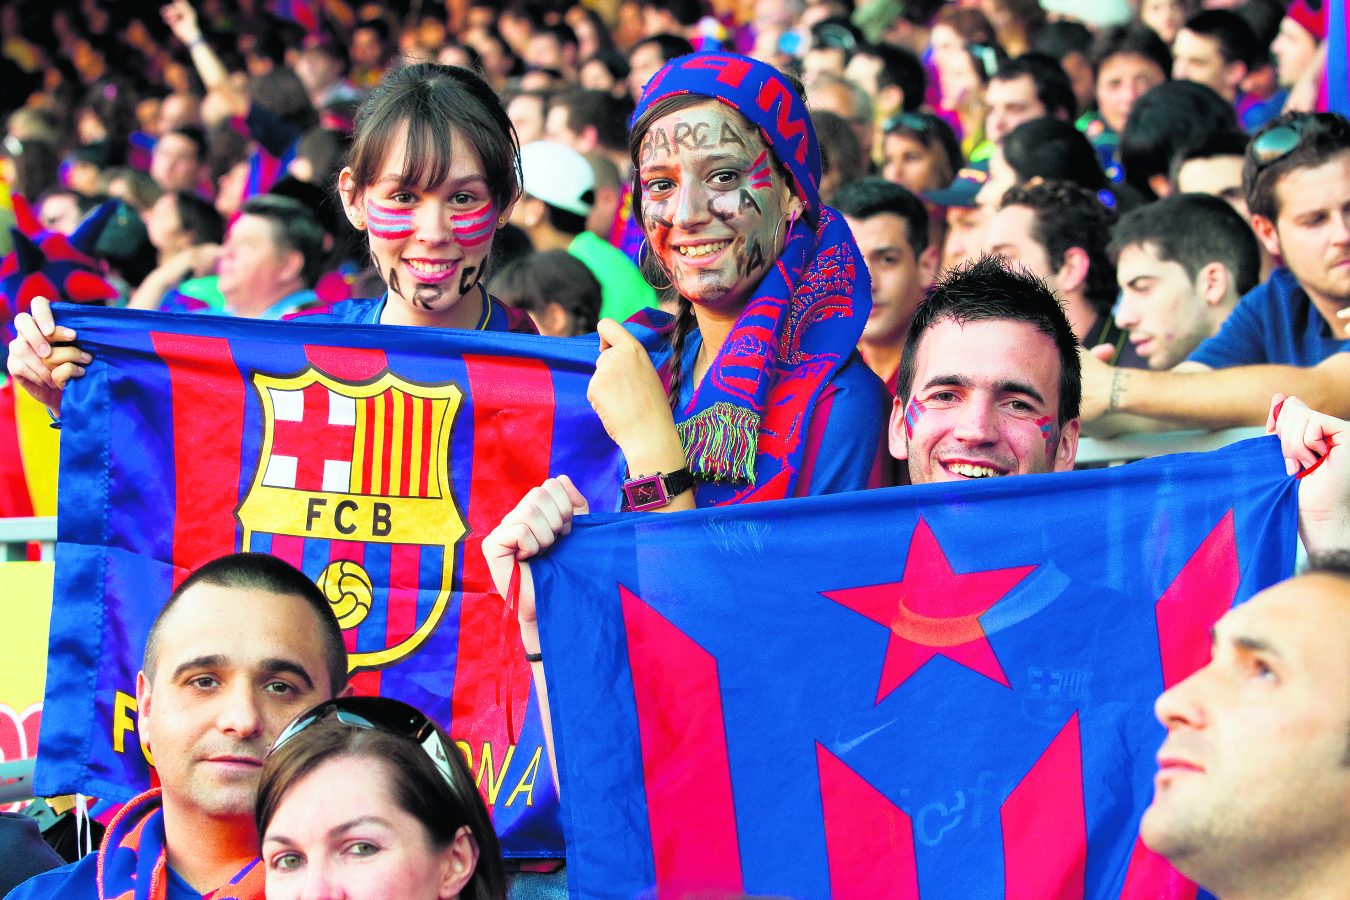 Barcelona gibi dünya kulüplerinin pek çok ülkeden taraftarı var.